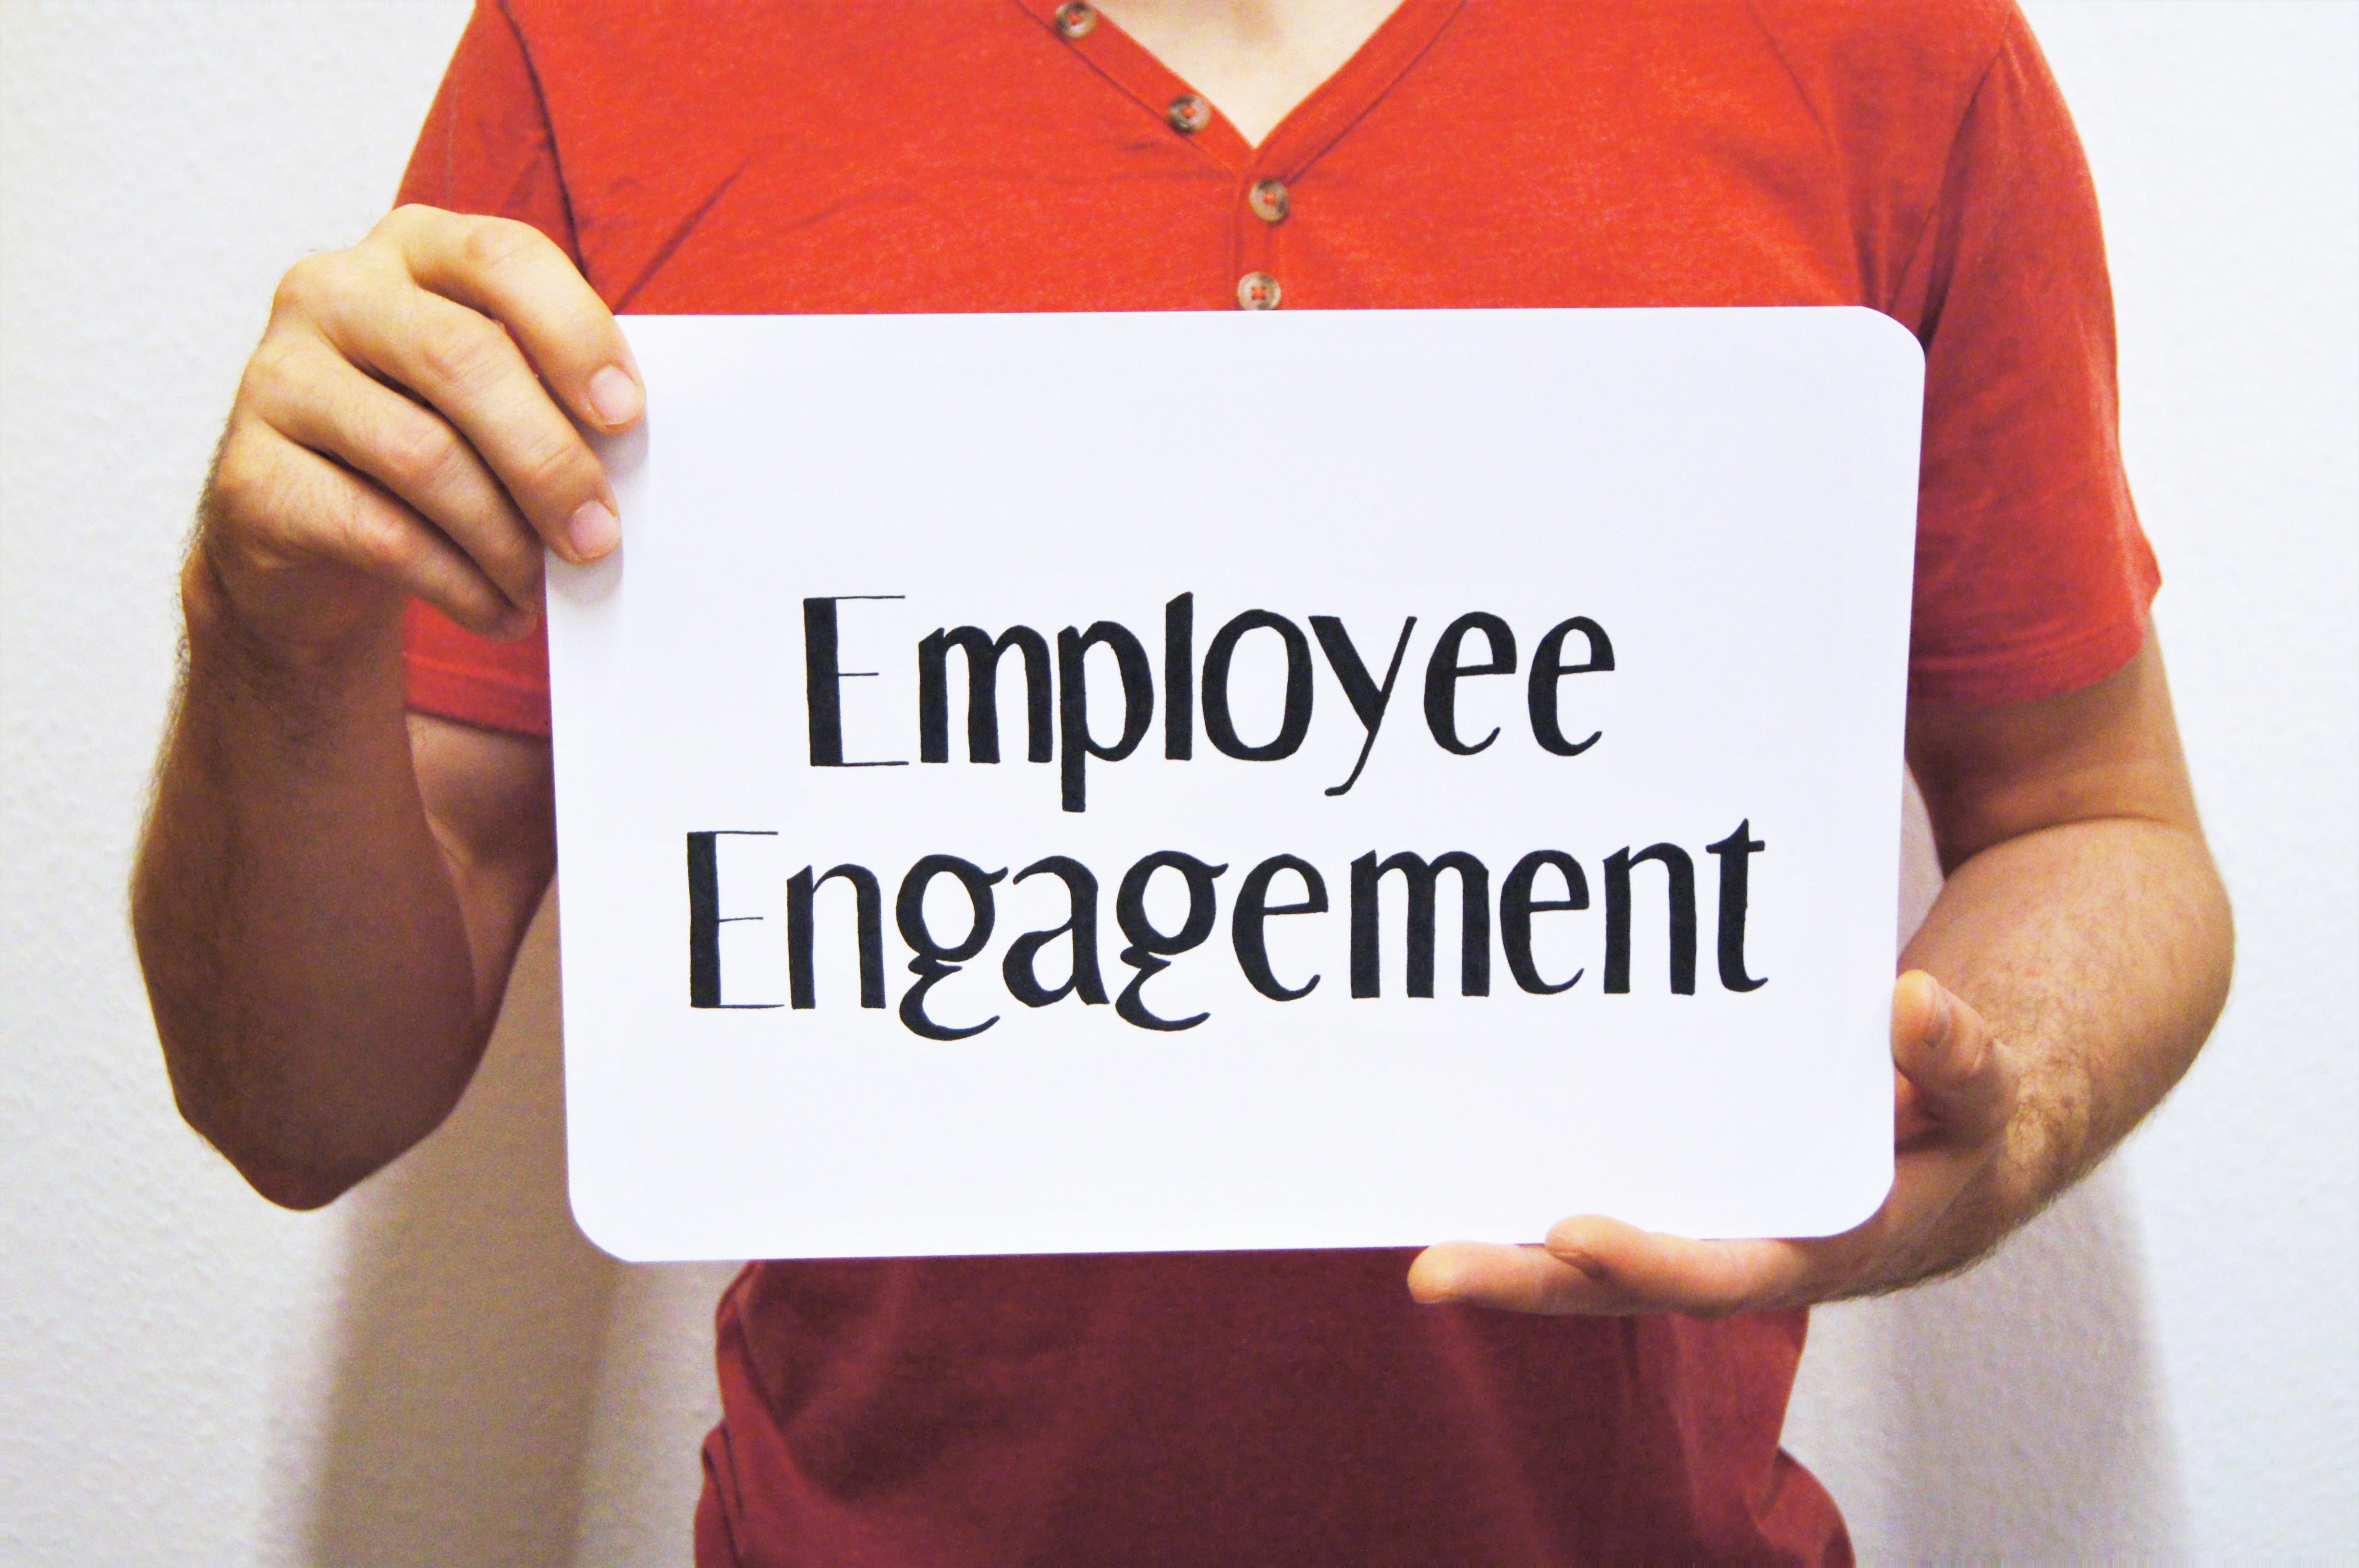 Ein Schild mit Employee Engagement wird hochgehalten